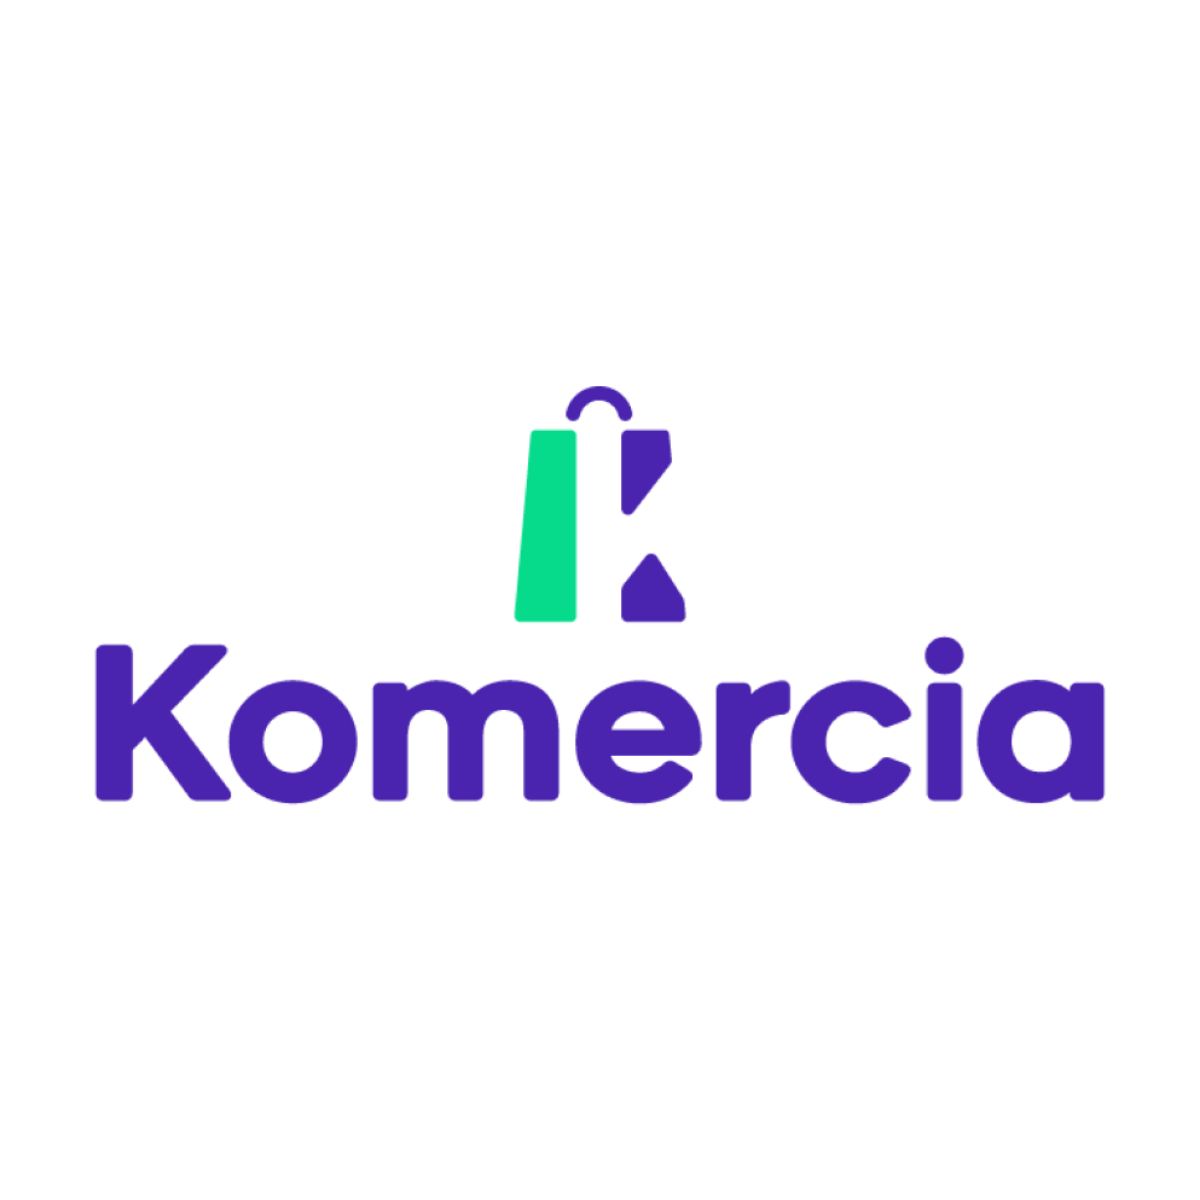 Komercia App